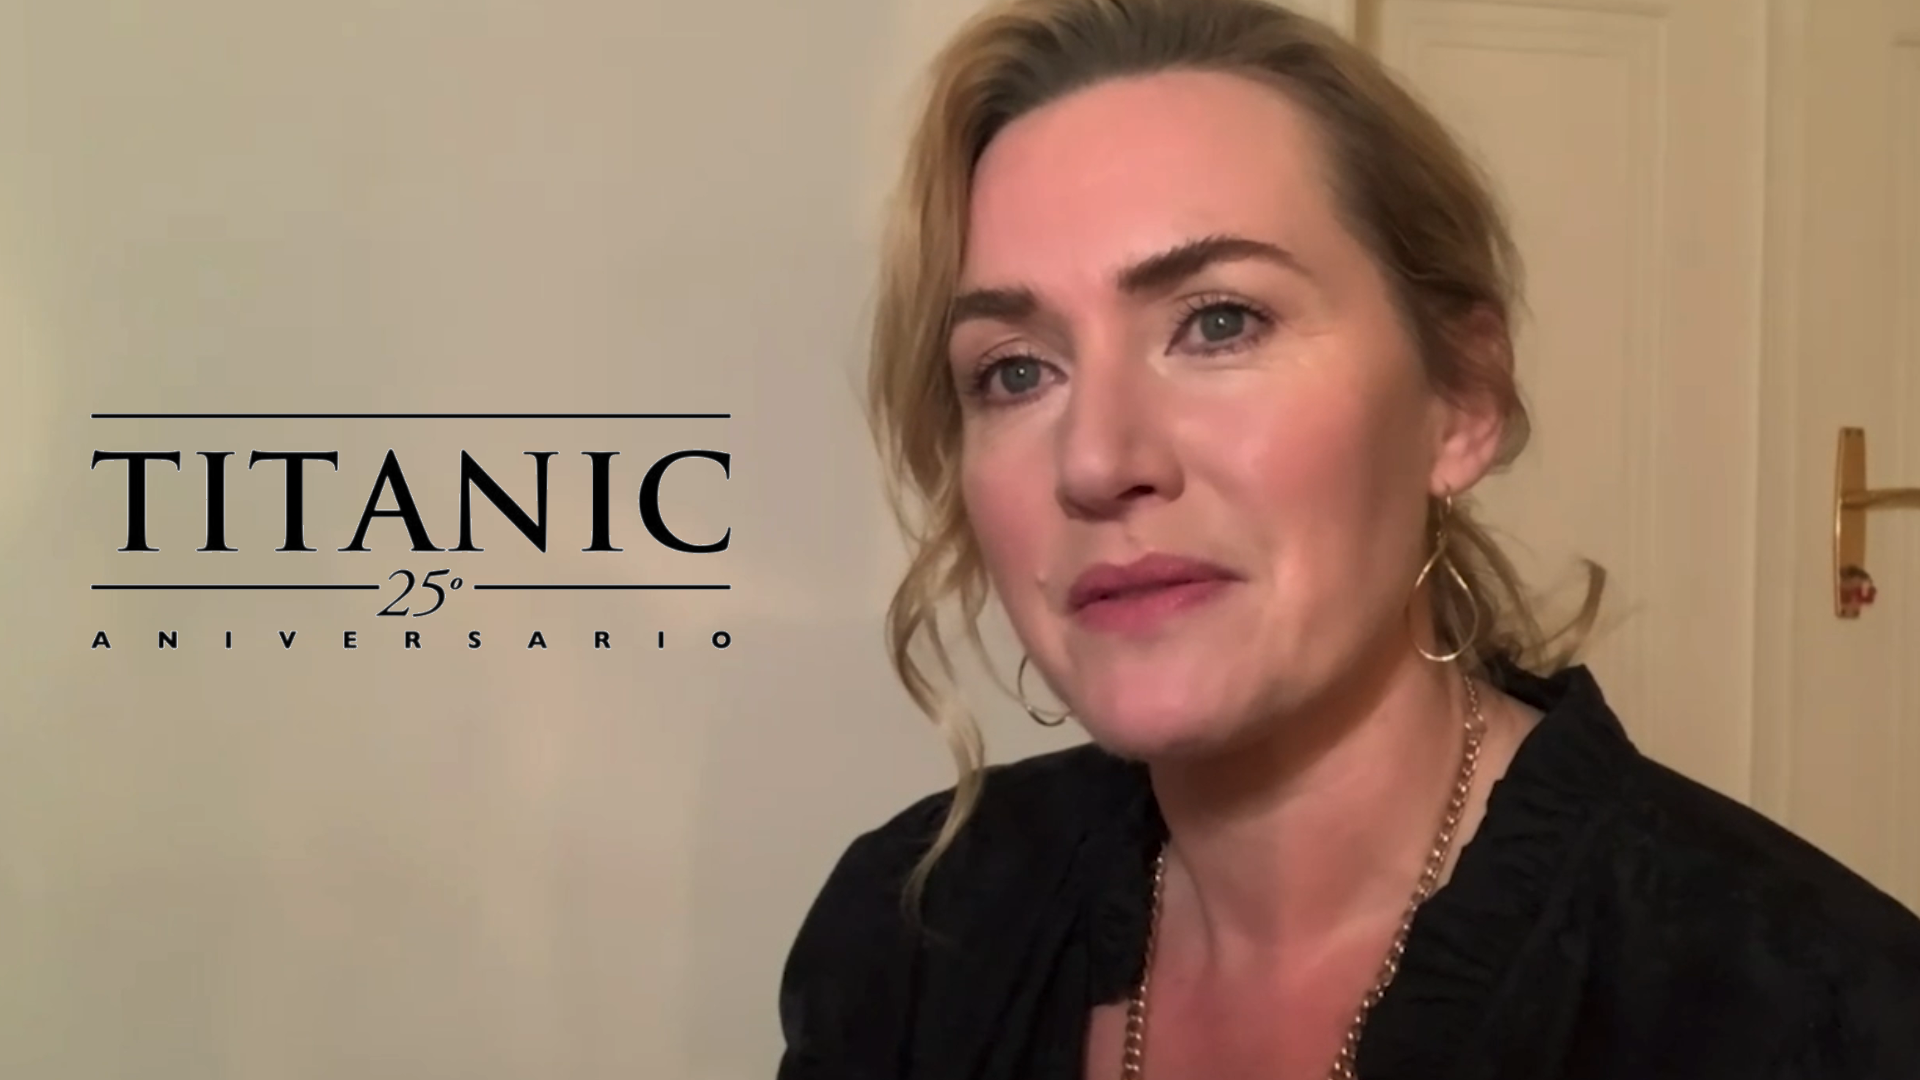 Kate Winslet recuerda el duro rodaje de “Titanic”, su amistad con Leonardo DiCaprio y las preguntas sobre si Jack cabía en la puerta